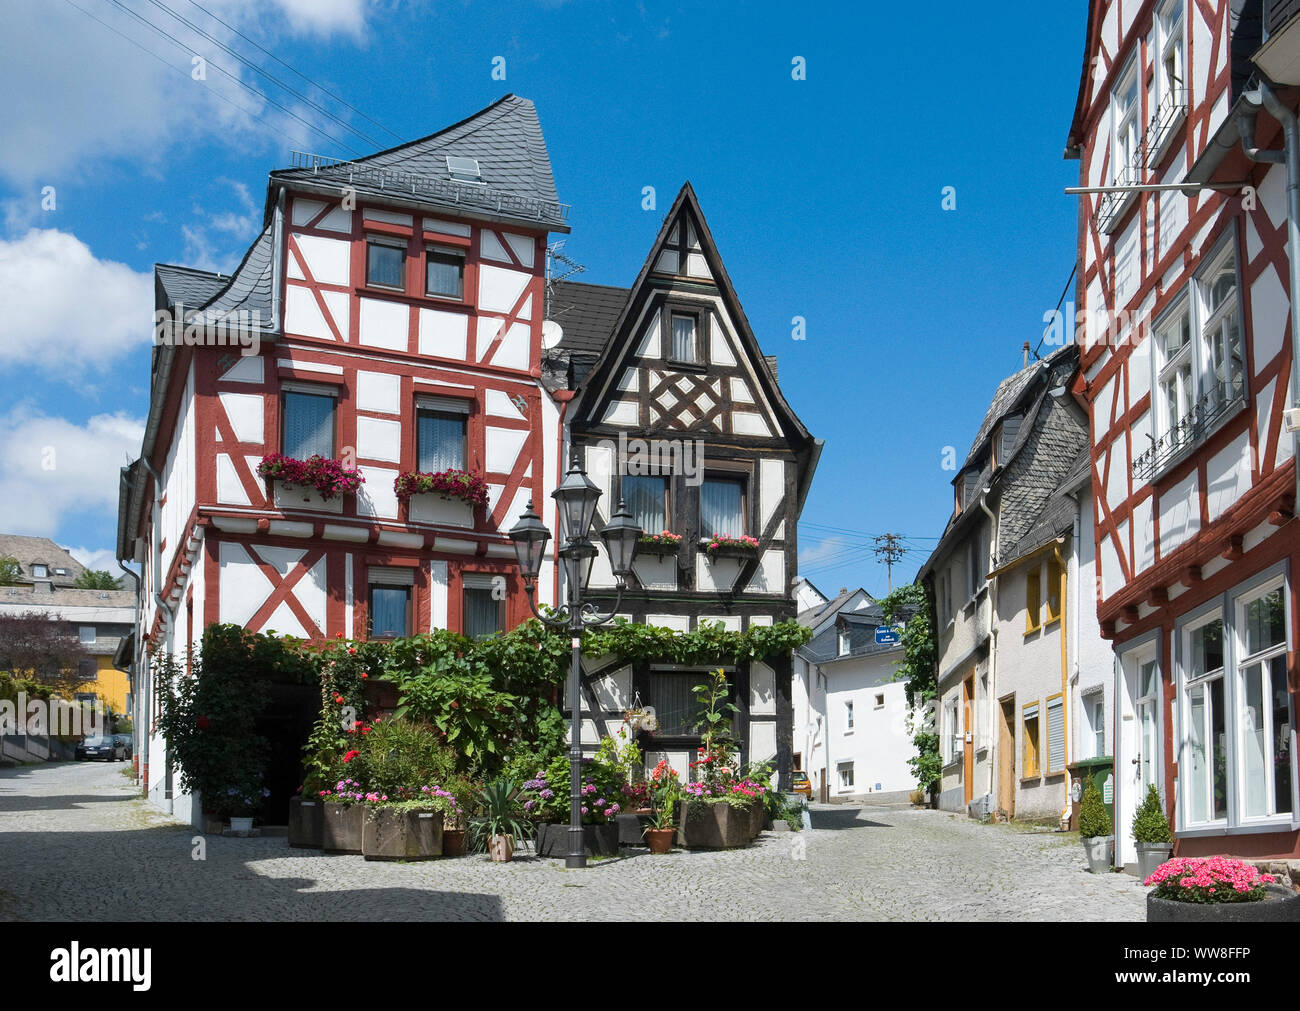 In Germania, in Renania Palatinato, Montabaur, antica preghiera ebraica house, casa in legno e muratura del XVII secolo nel centro storico della città Foto Stock